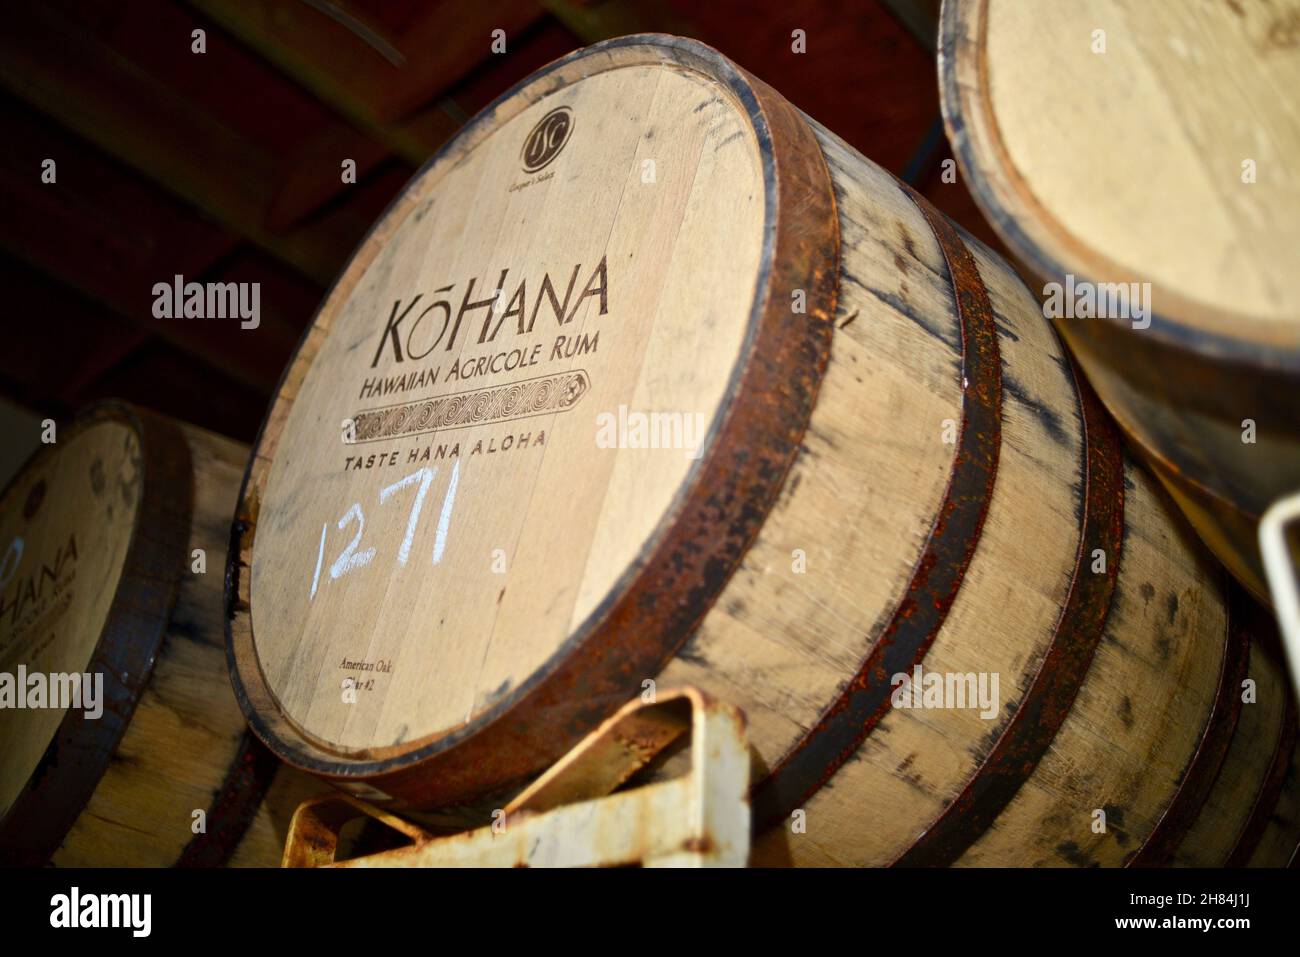 Botti di legno di quercia americana per l'invecchiamento distillato rum hawaiano di canna da zucchero, a Kō Hana Distillers, Kō Hana Hawaiian agricole Rum, Kunia, HI, US Foto Stock